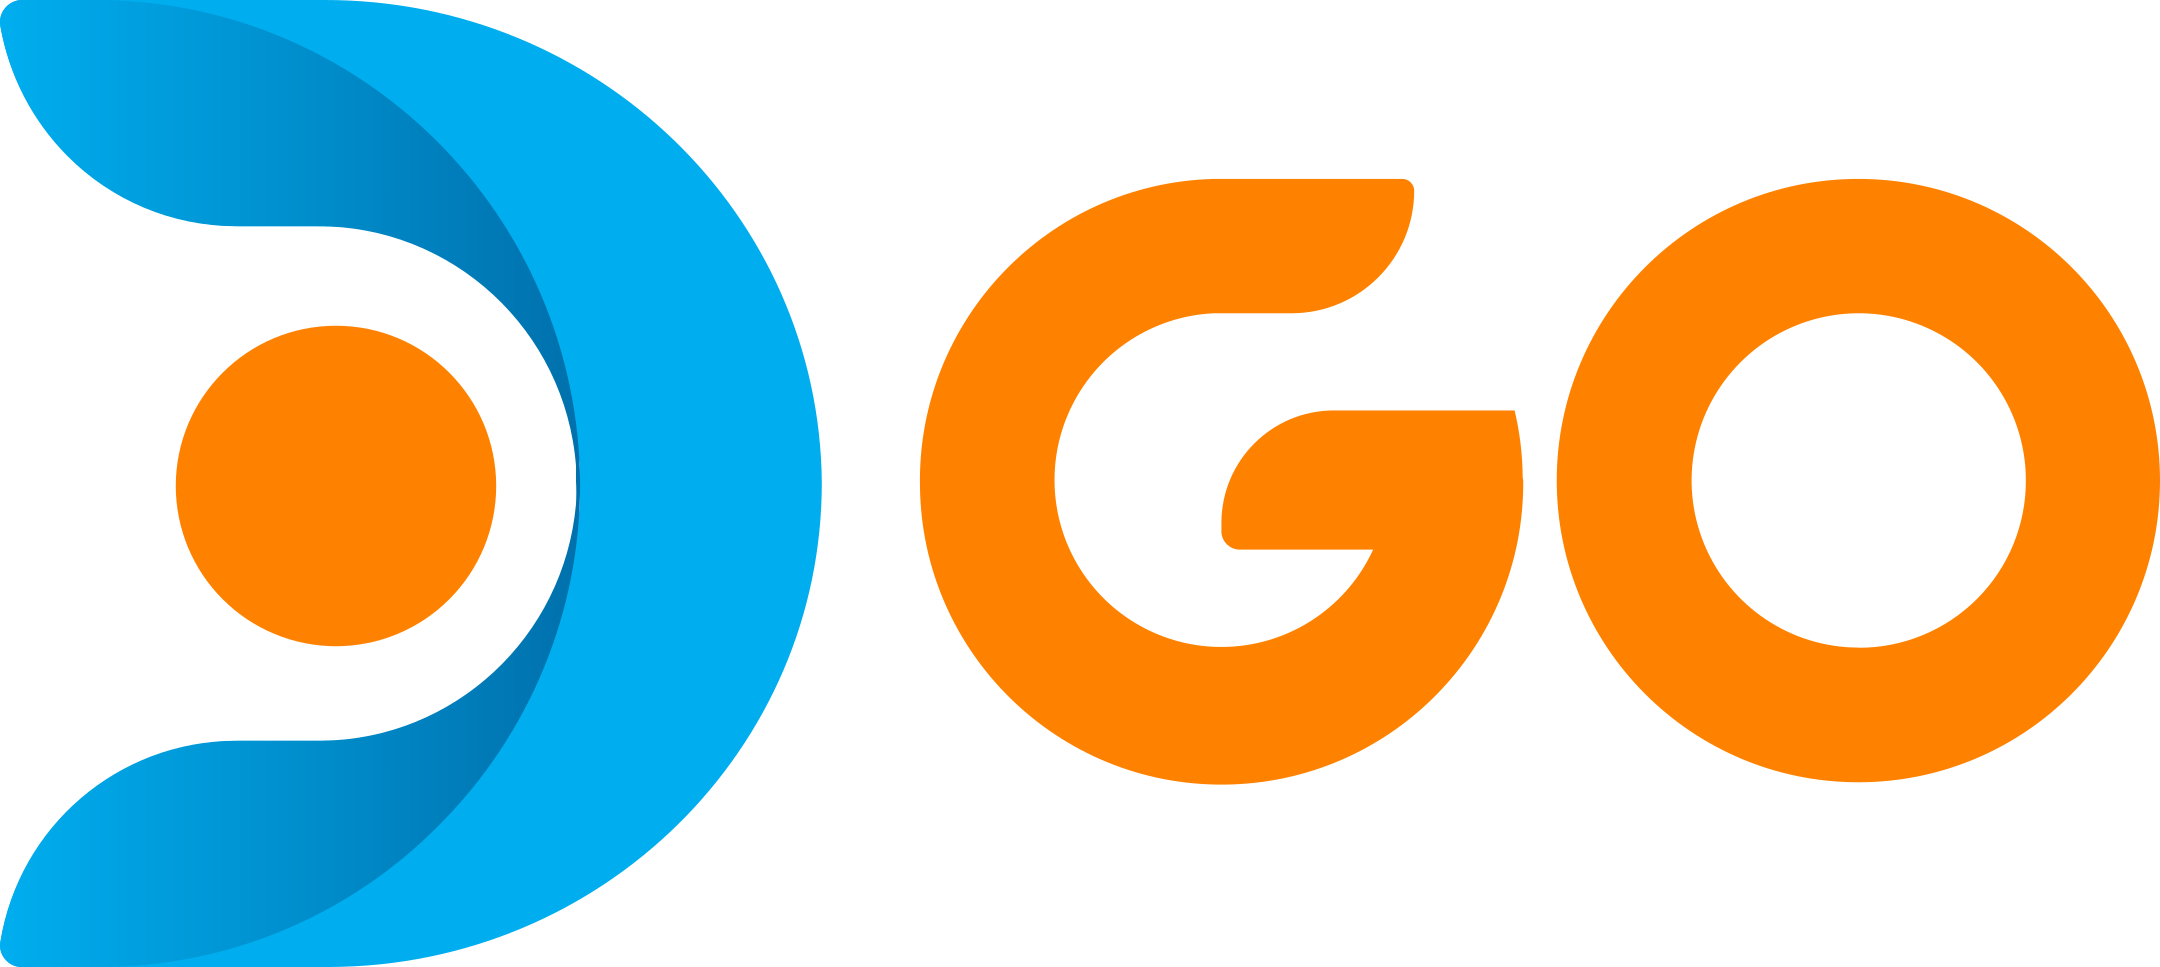 dgo logo 1 - DGO Logo